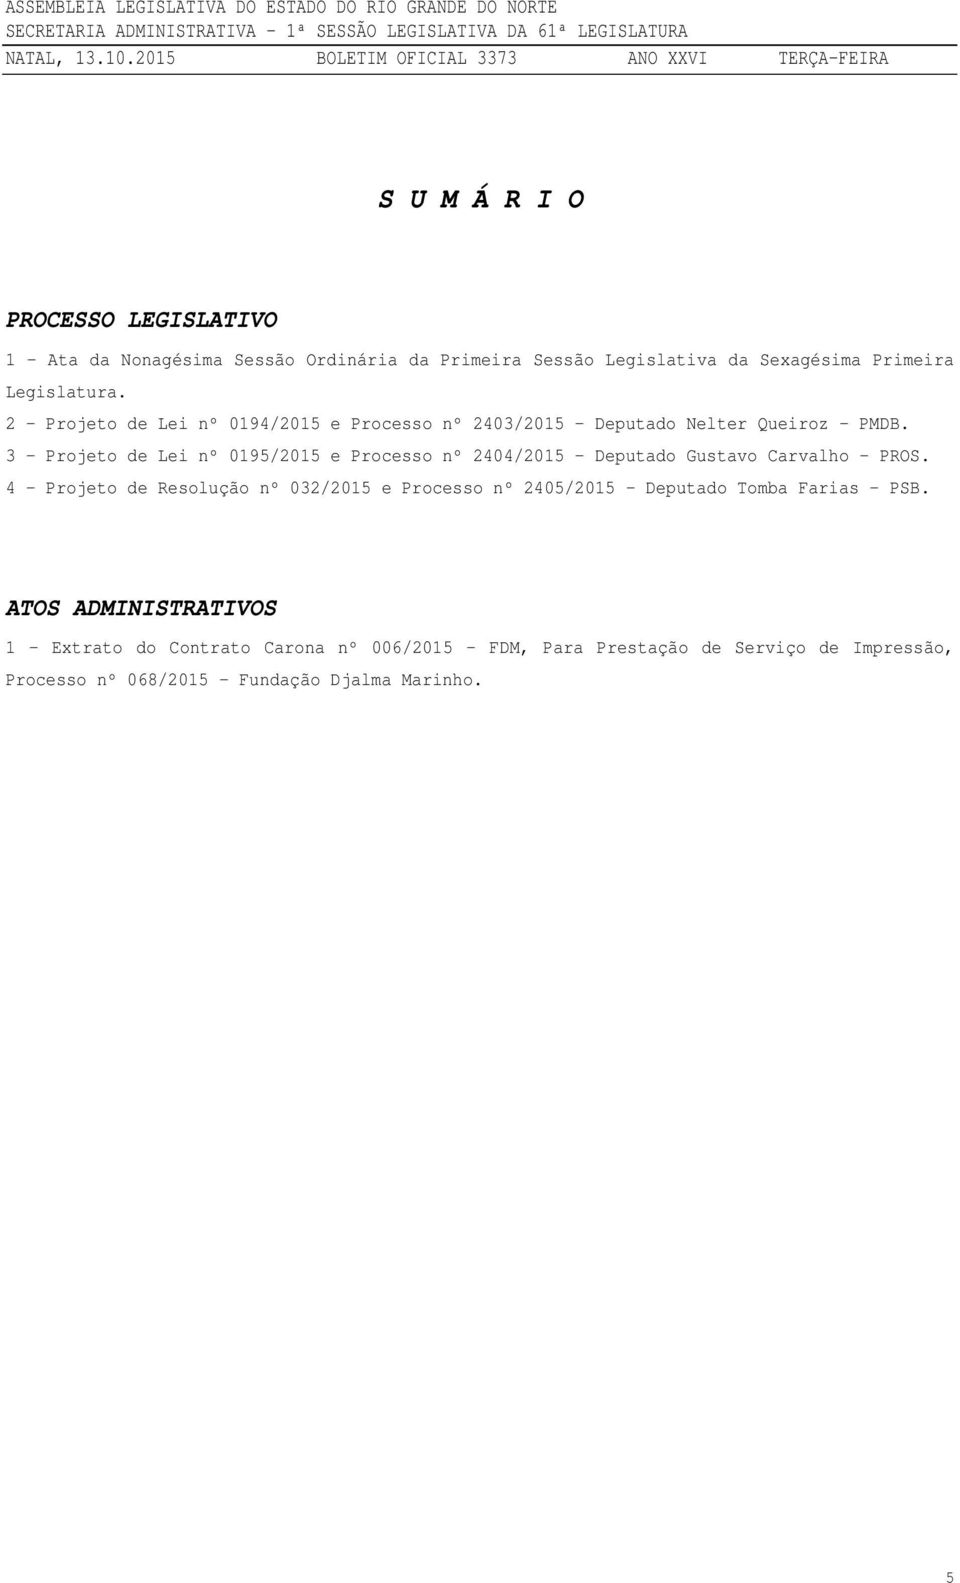 3 - Projeto de Lei nº 0195/2015 e Processo nº 2404/2015 Deputado Gustavo Carvalho PROS.